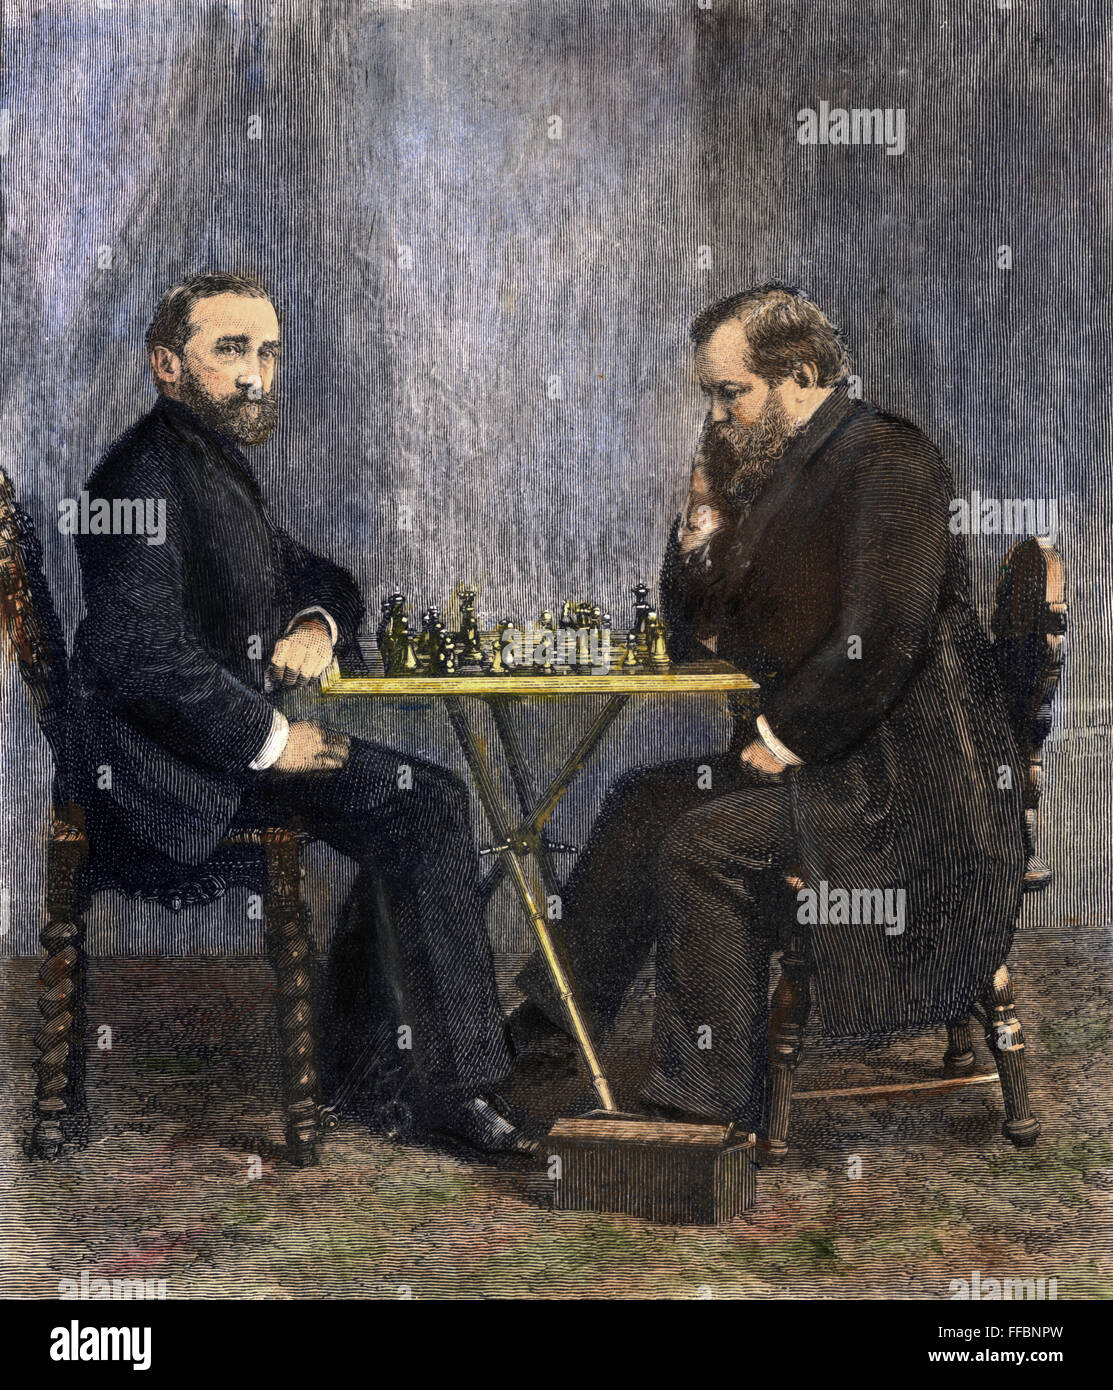 ZUKERTORT VS. Steiniz. /NJohannes Hermann Zukertort y Wilhelm Steiniz en el momento de su partido de campeonato de ajedrez en Nueva York en 1886. Grabado en madera de un periódico americano contemporáneo. Foto de stock